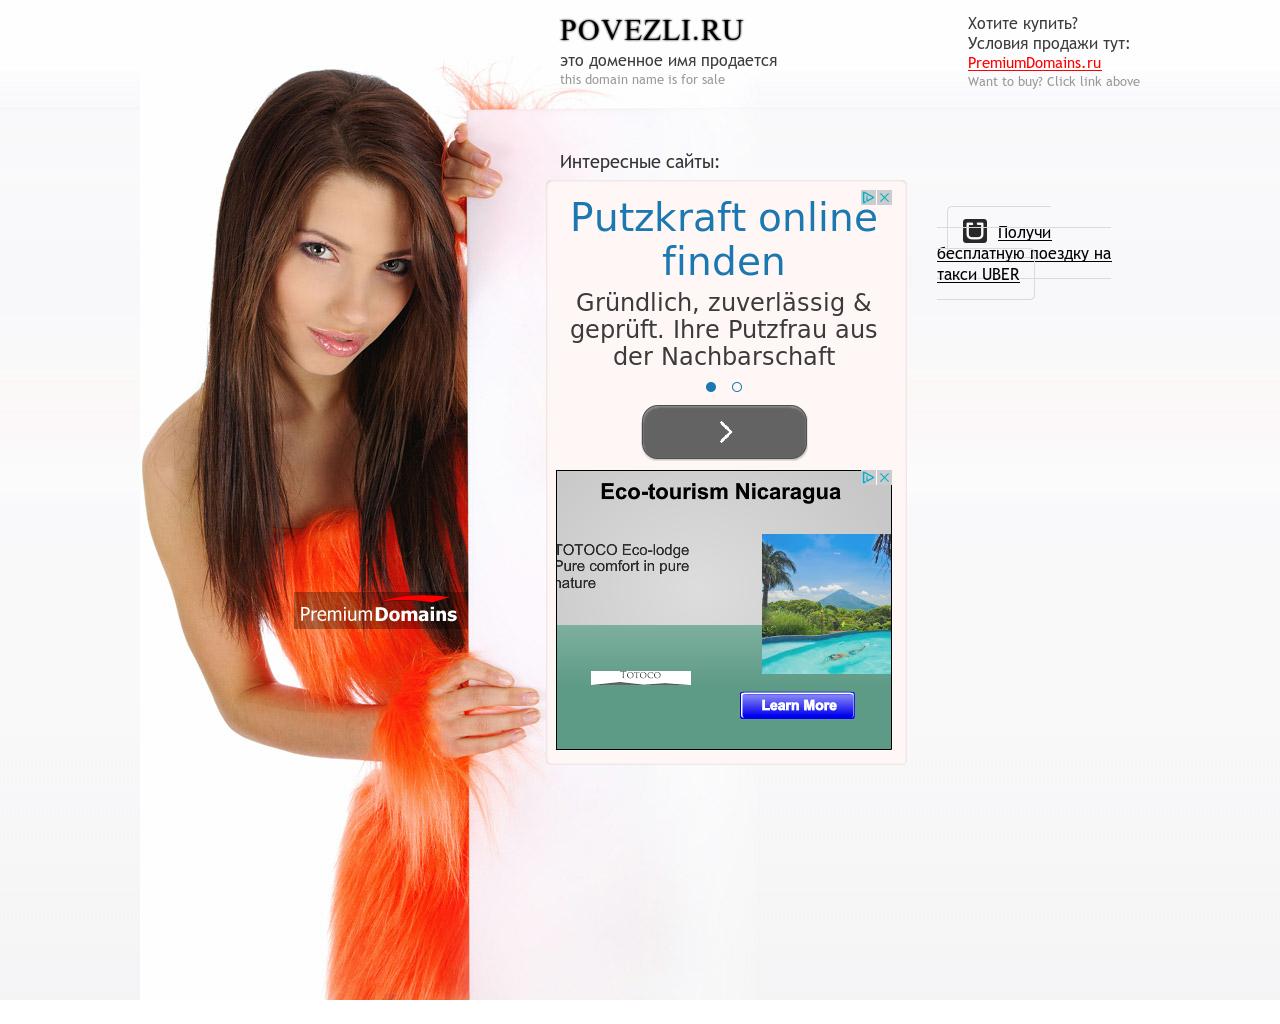 Изображение сайта povezli.ru в разрешении 1280x1024